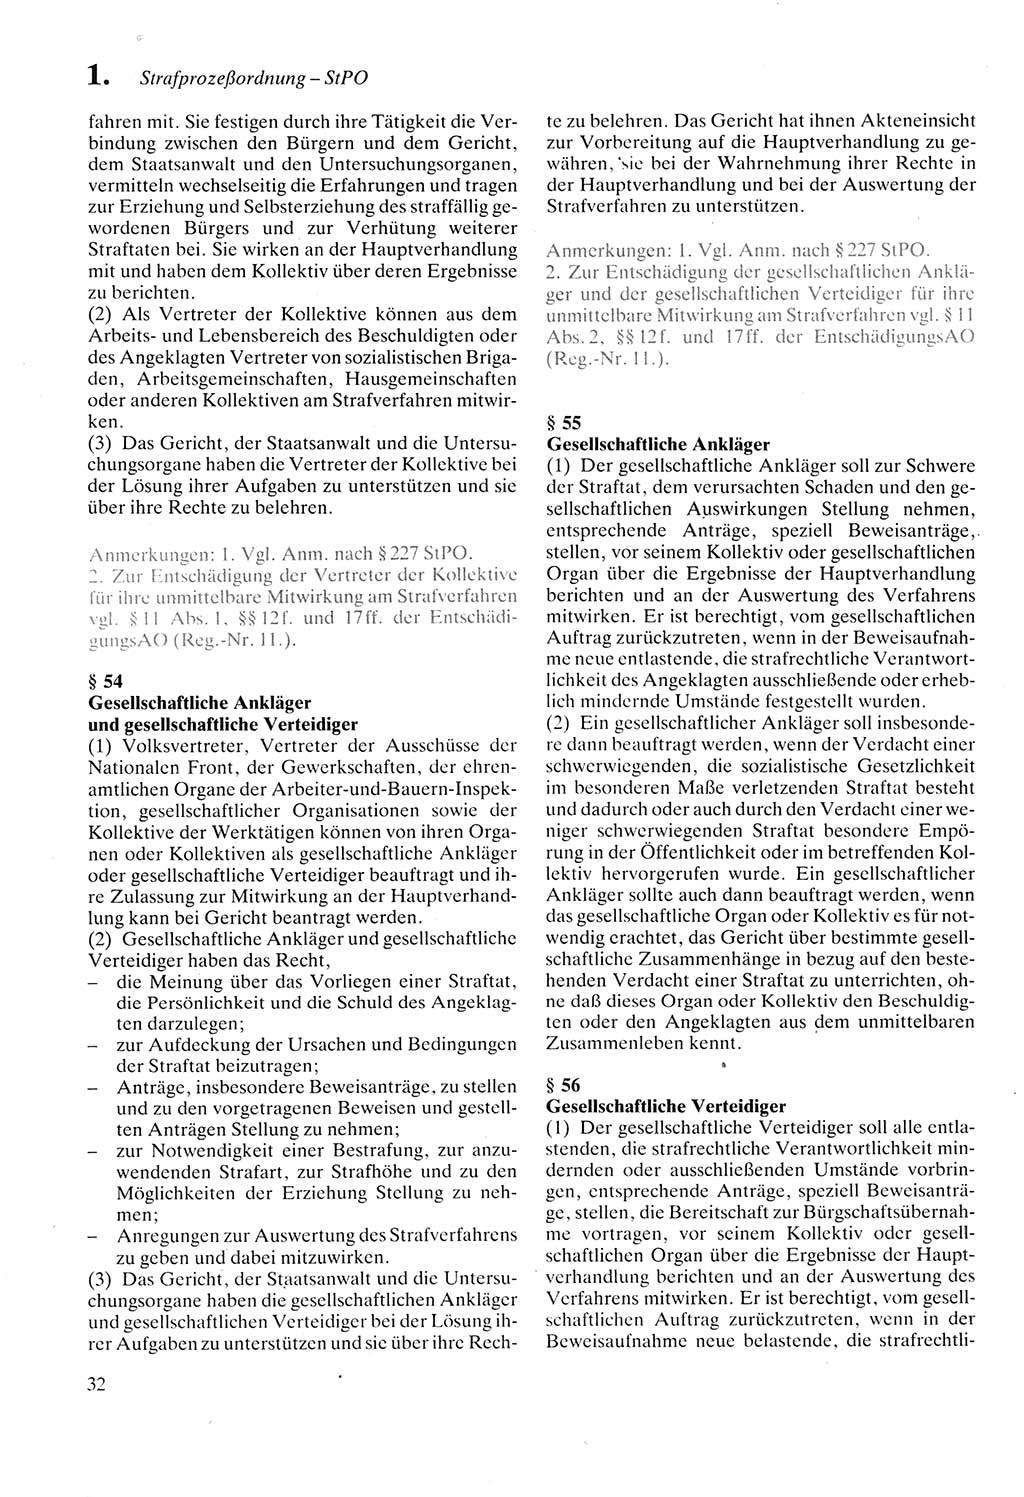 Strafprozeßordnung (StPO) der Deutschen Demokratischen Republik (DDR) sowie angrenzende Gesetze und Bestimmungen 1987, Seite 32 (StPO DDR Ges. Best. 1987, S. 32)